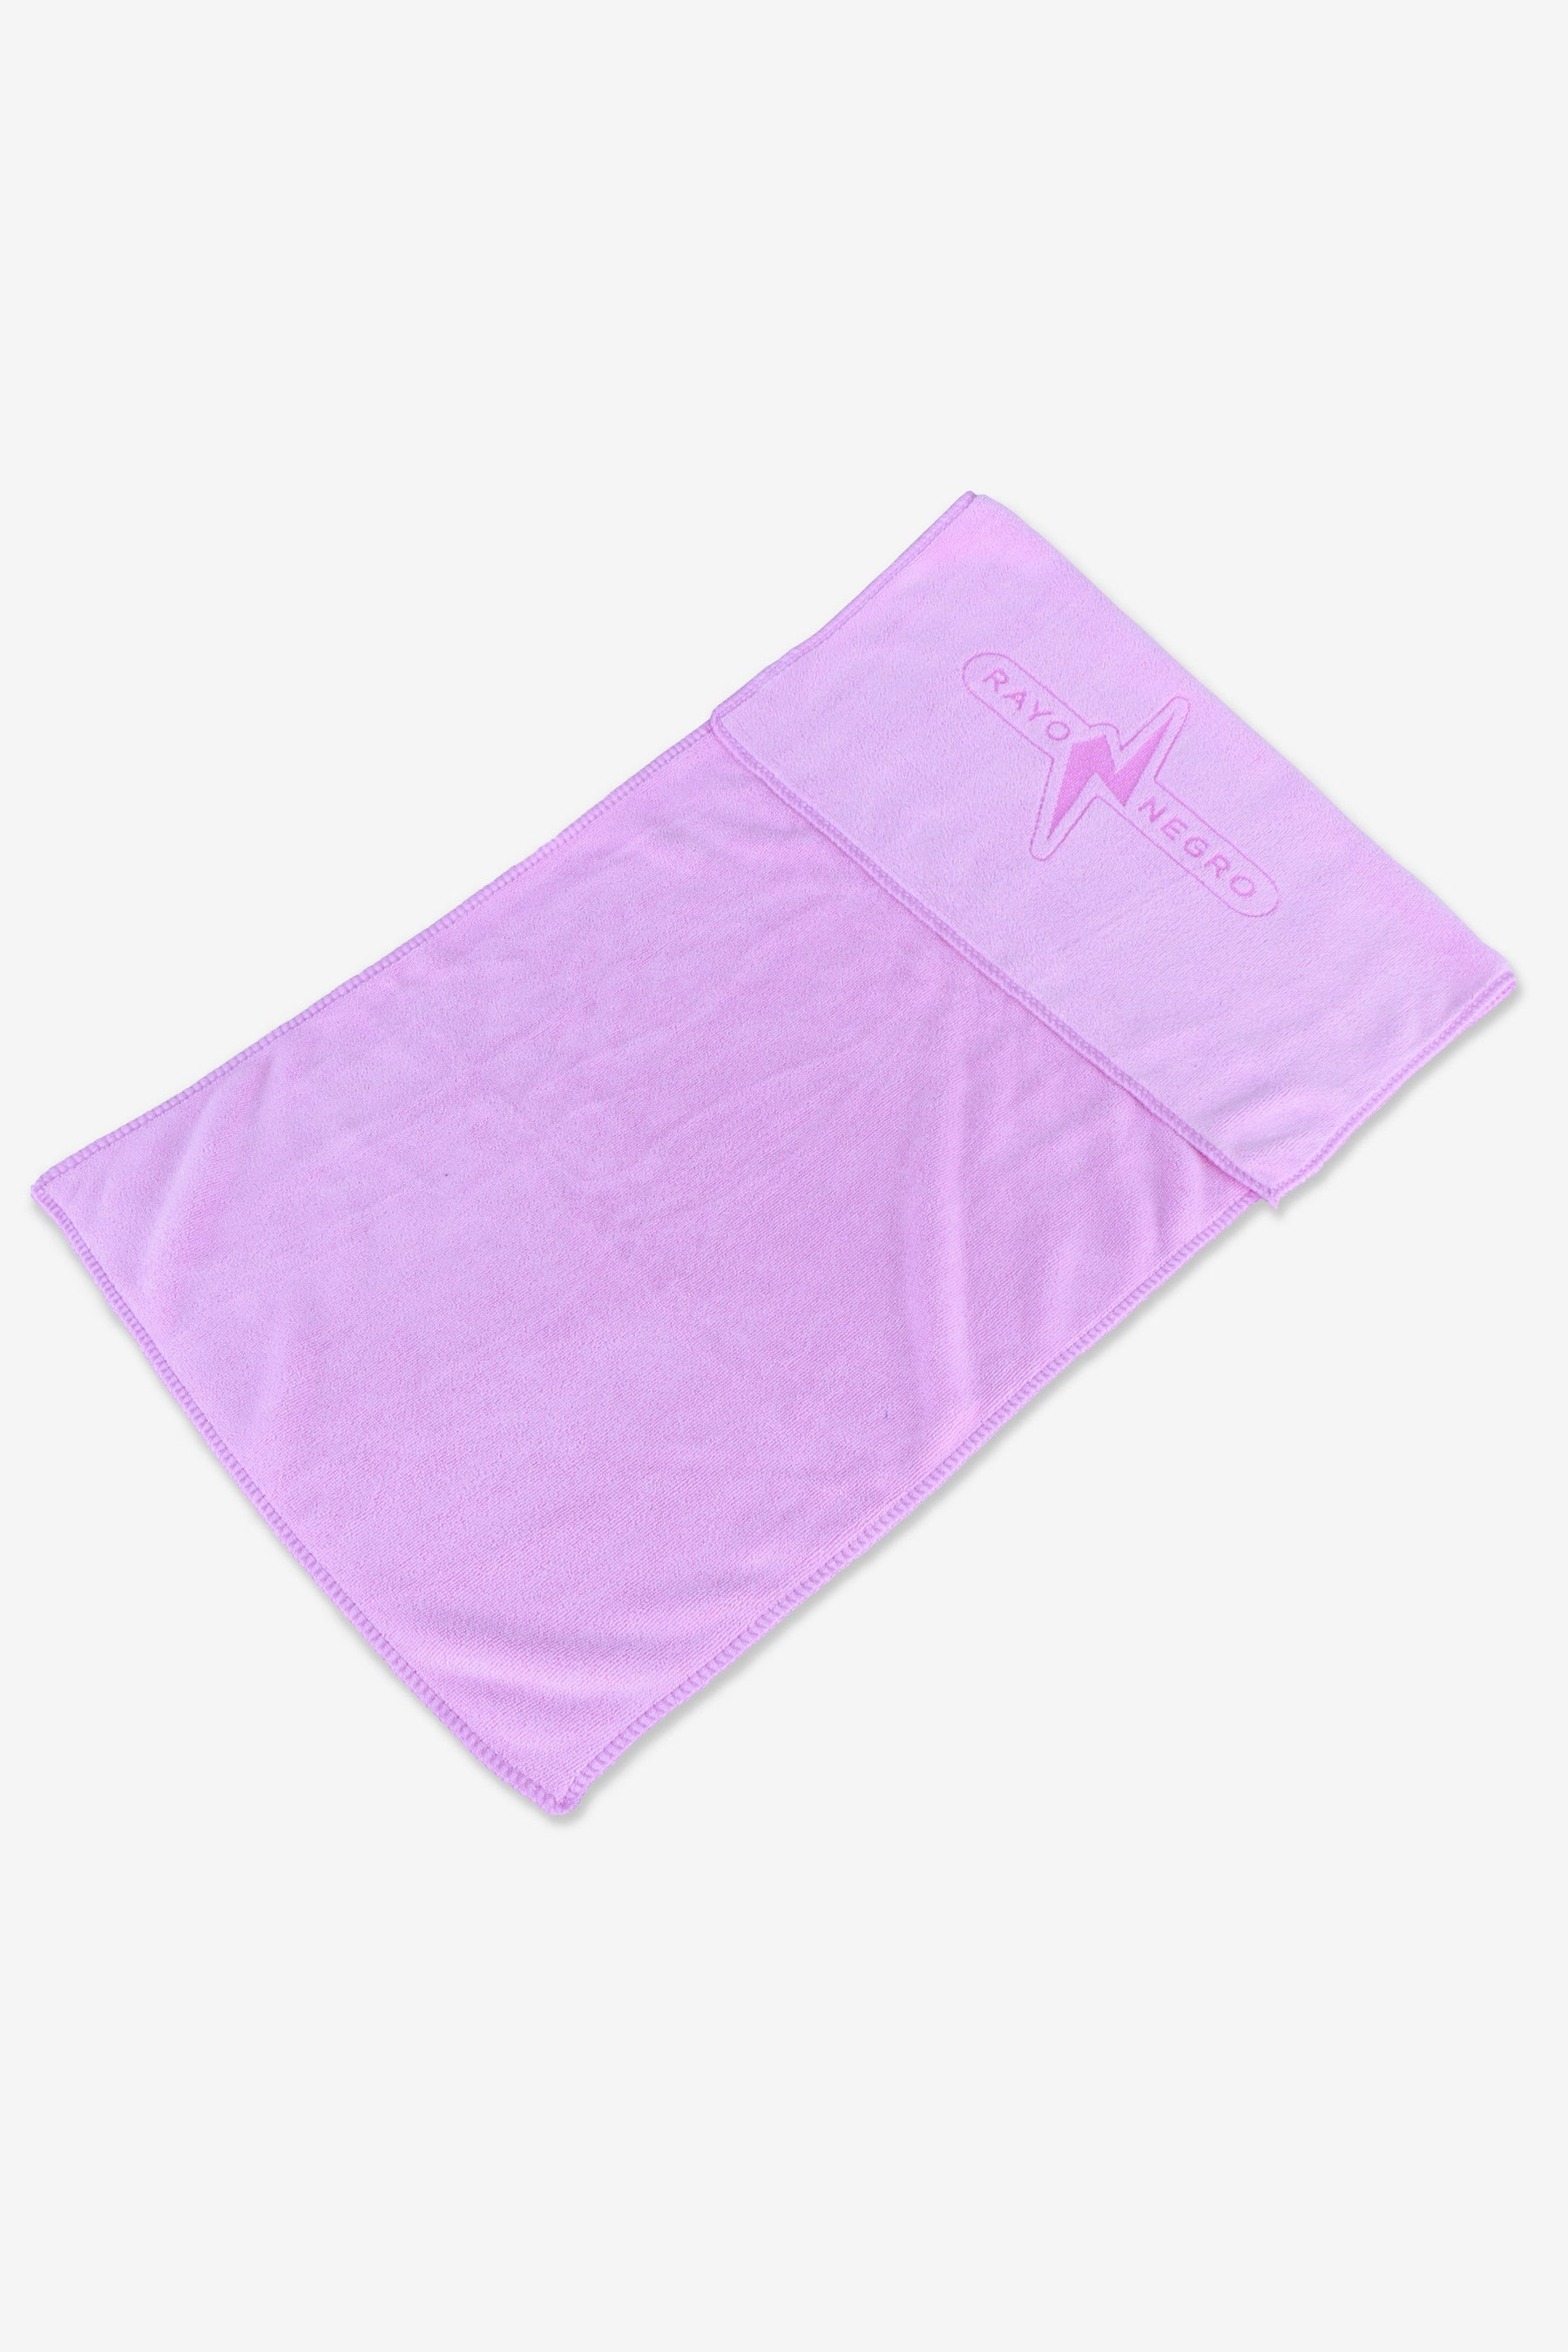 Las mejores toallas para el gimnasio que puedes comprar